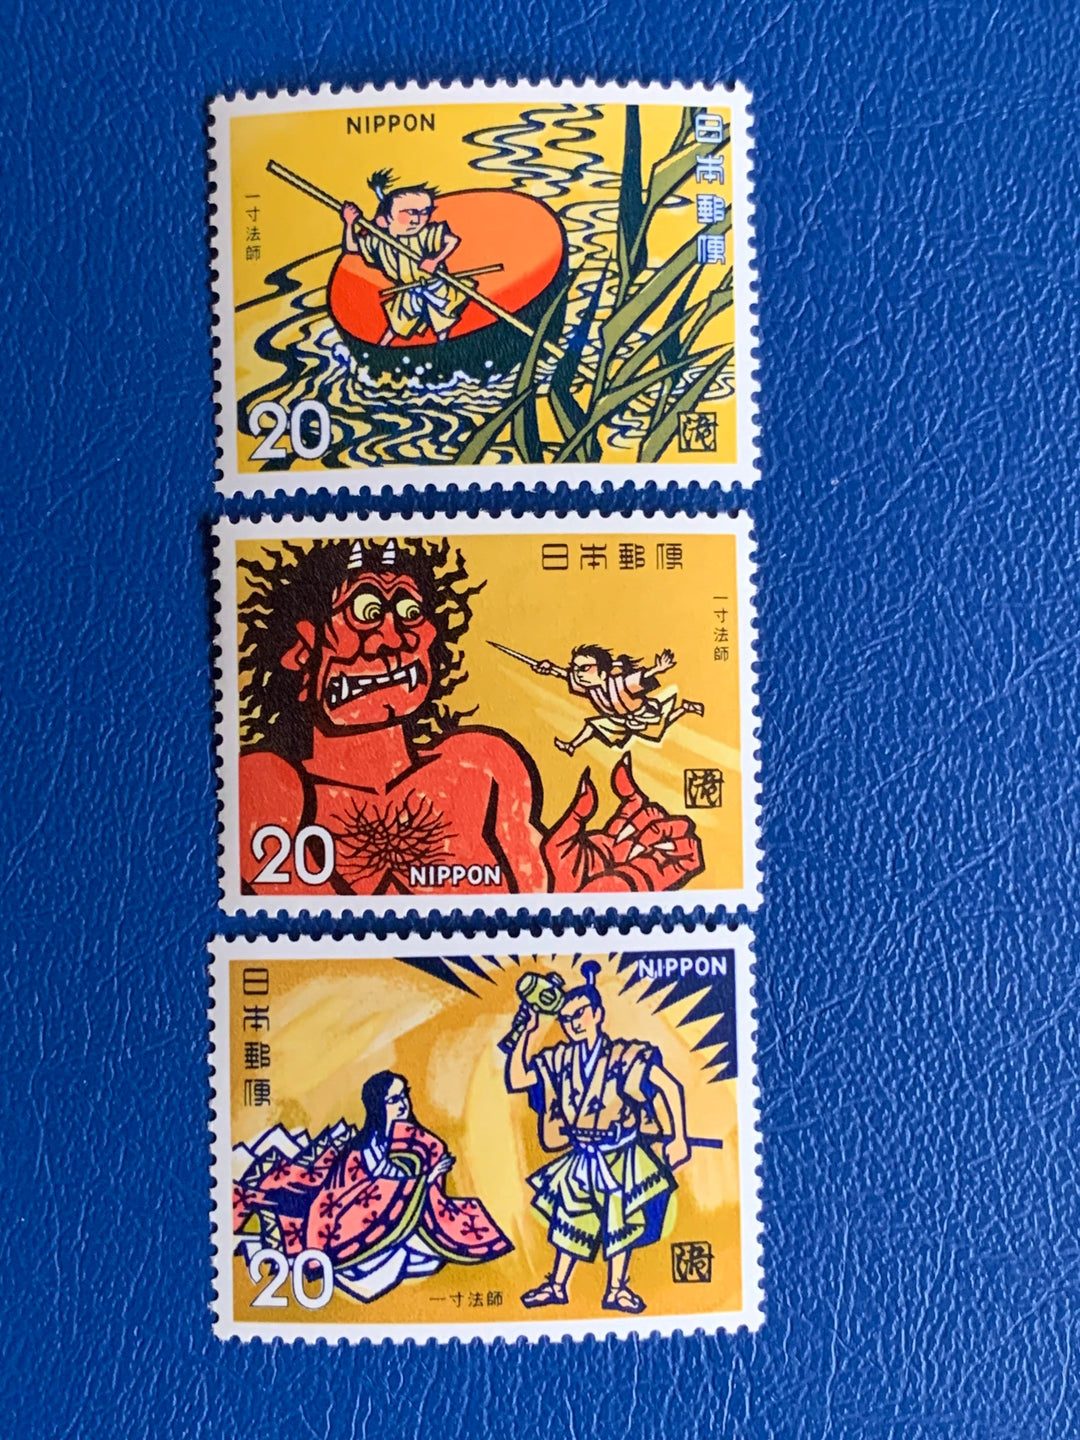 Japan - Original Vintage Postage Stamps- 1974 Folklore Issun-Boshi